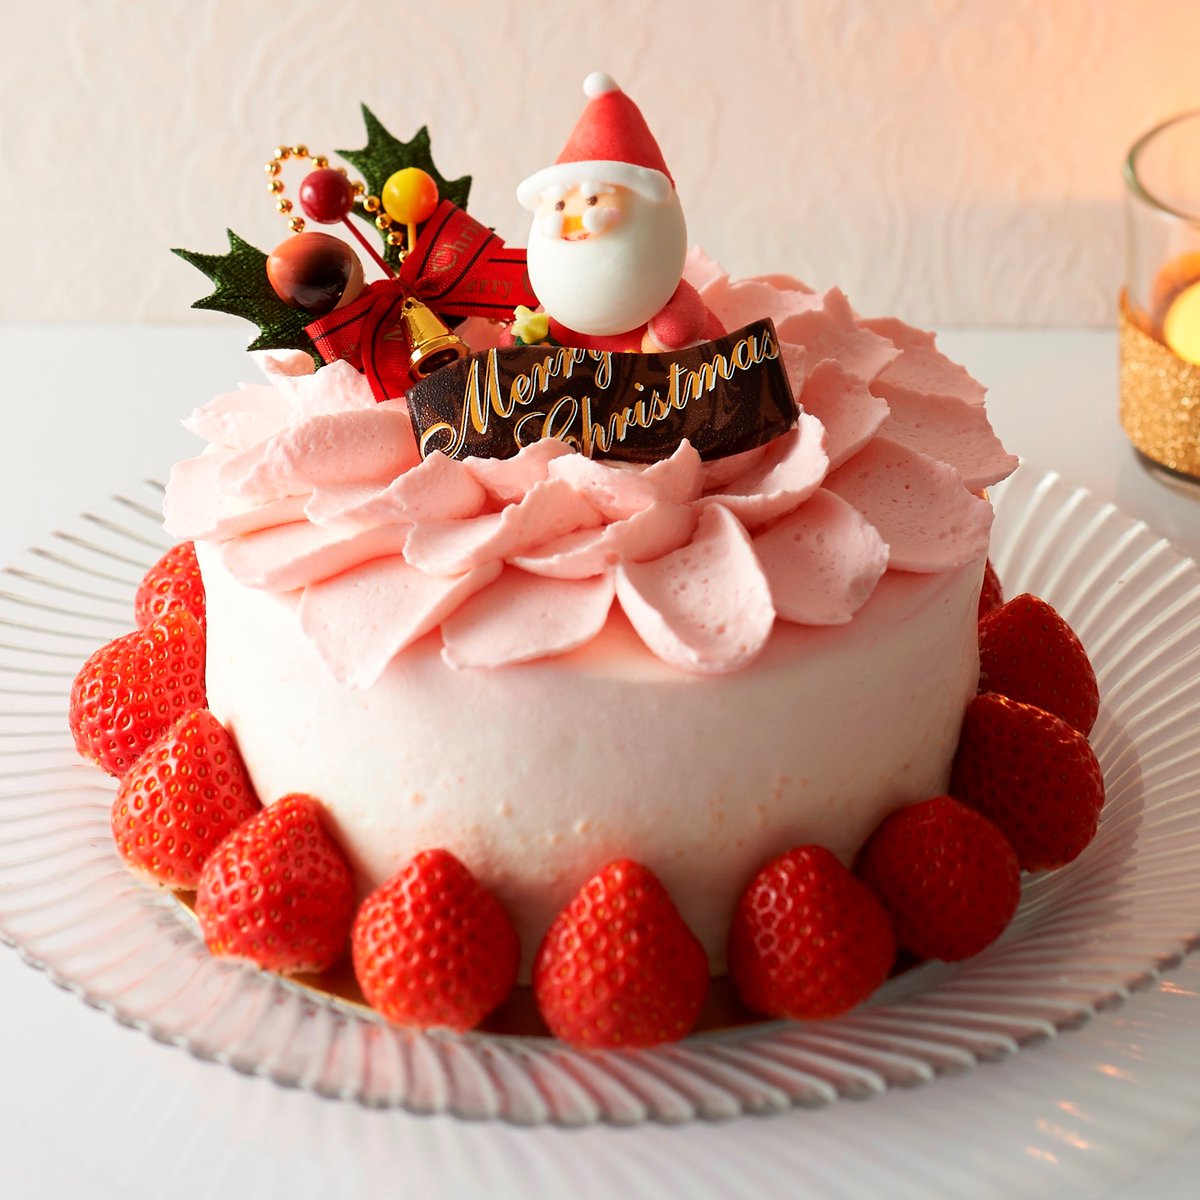 エキュート大宮 大宮 ノース パティスリープラネッツのクリスマスケーキ ノエルフルール 3 780円 苺 ラズベリー ブルーベリーを生クリームでサンドしたスペシャルショートケーキです クリスマスケーキ早期予約特典として 12月5日までにクリスマス